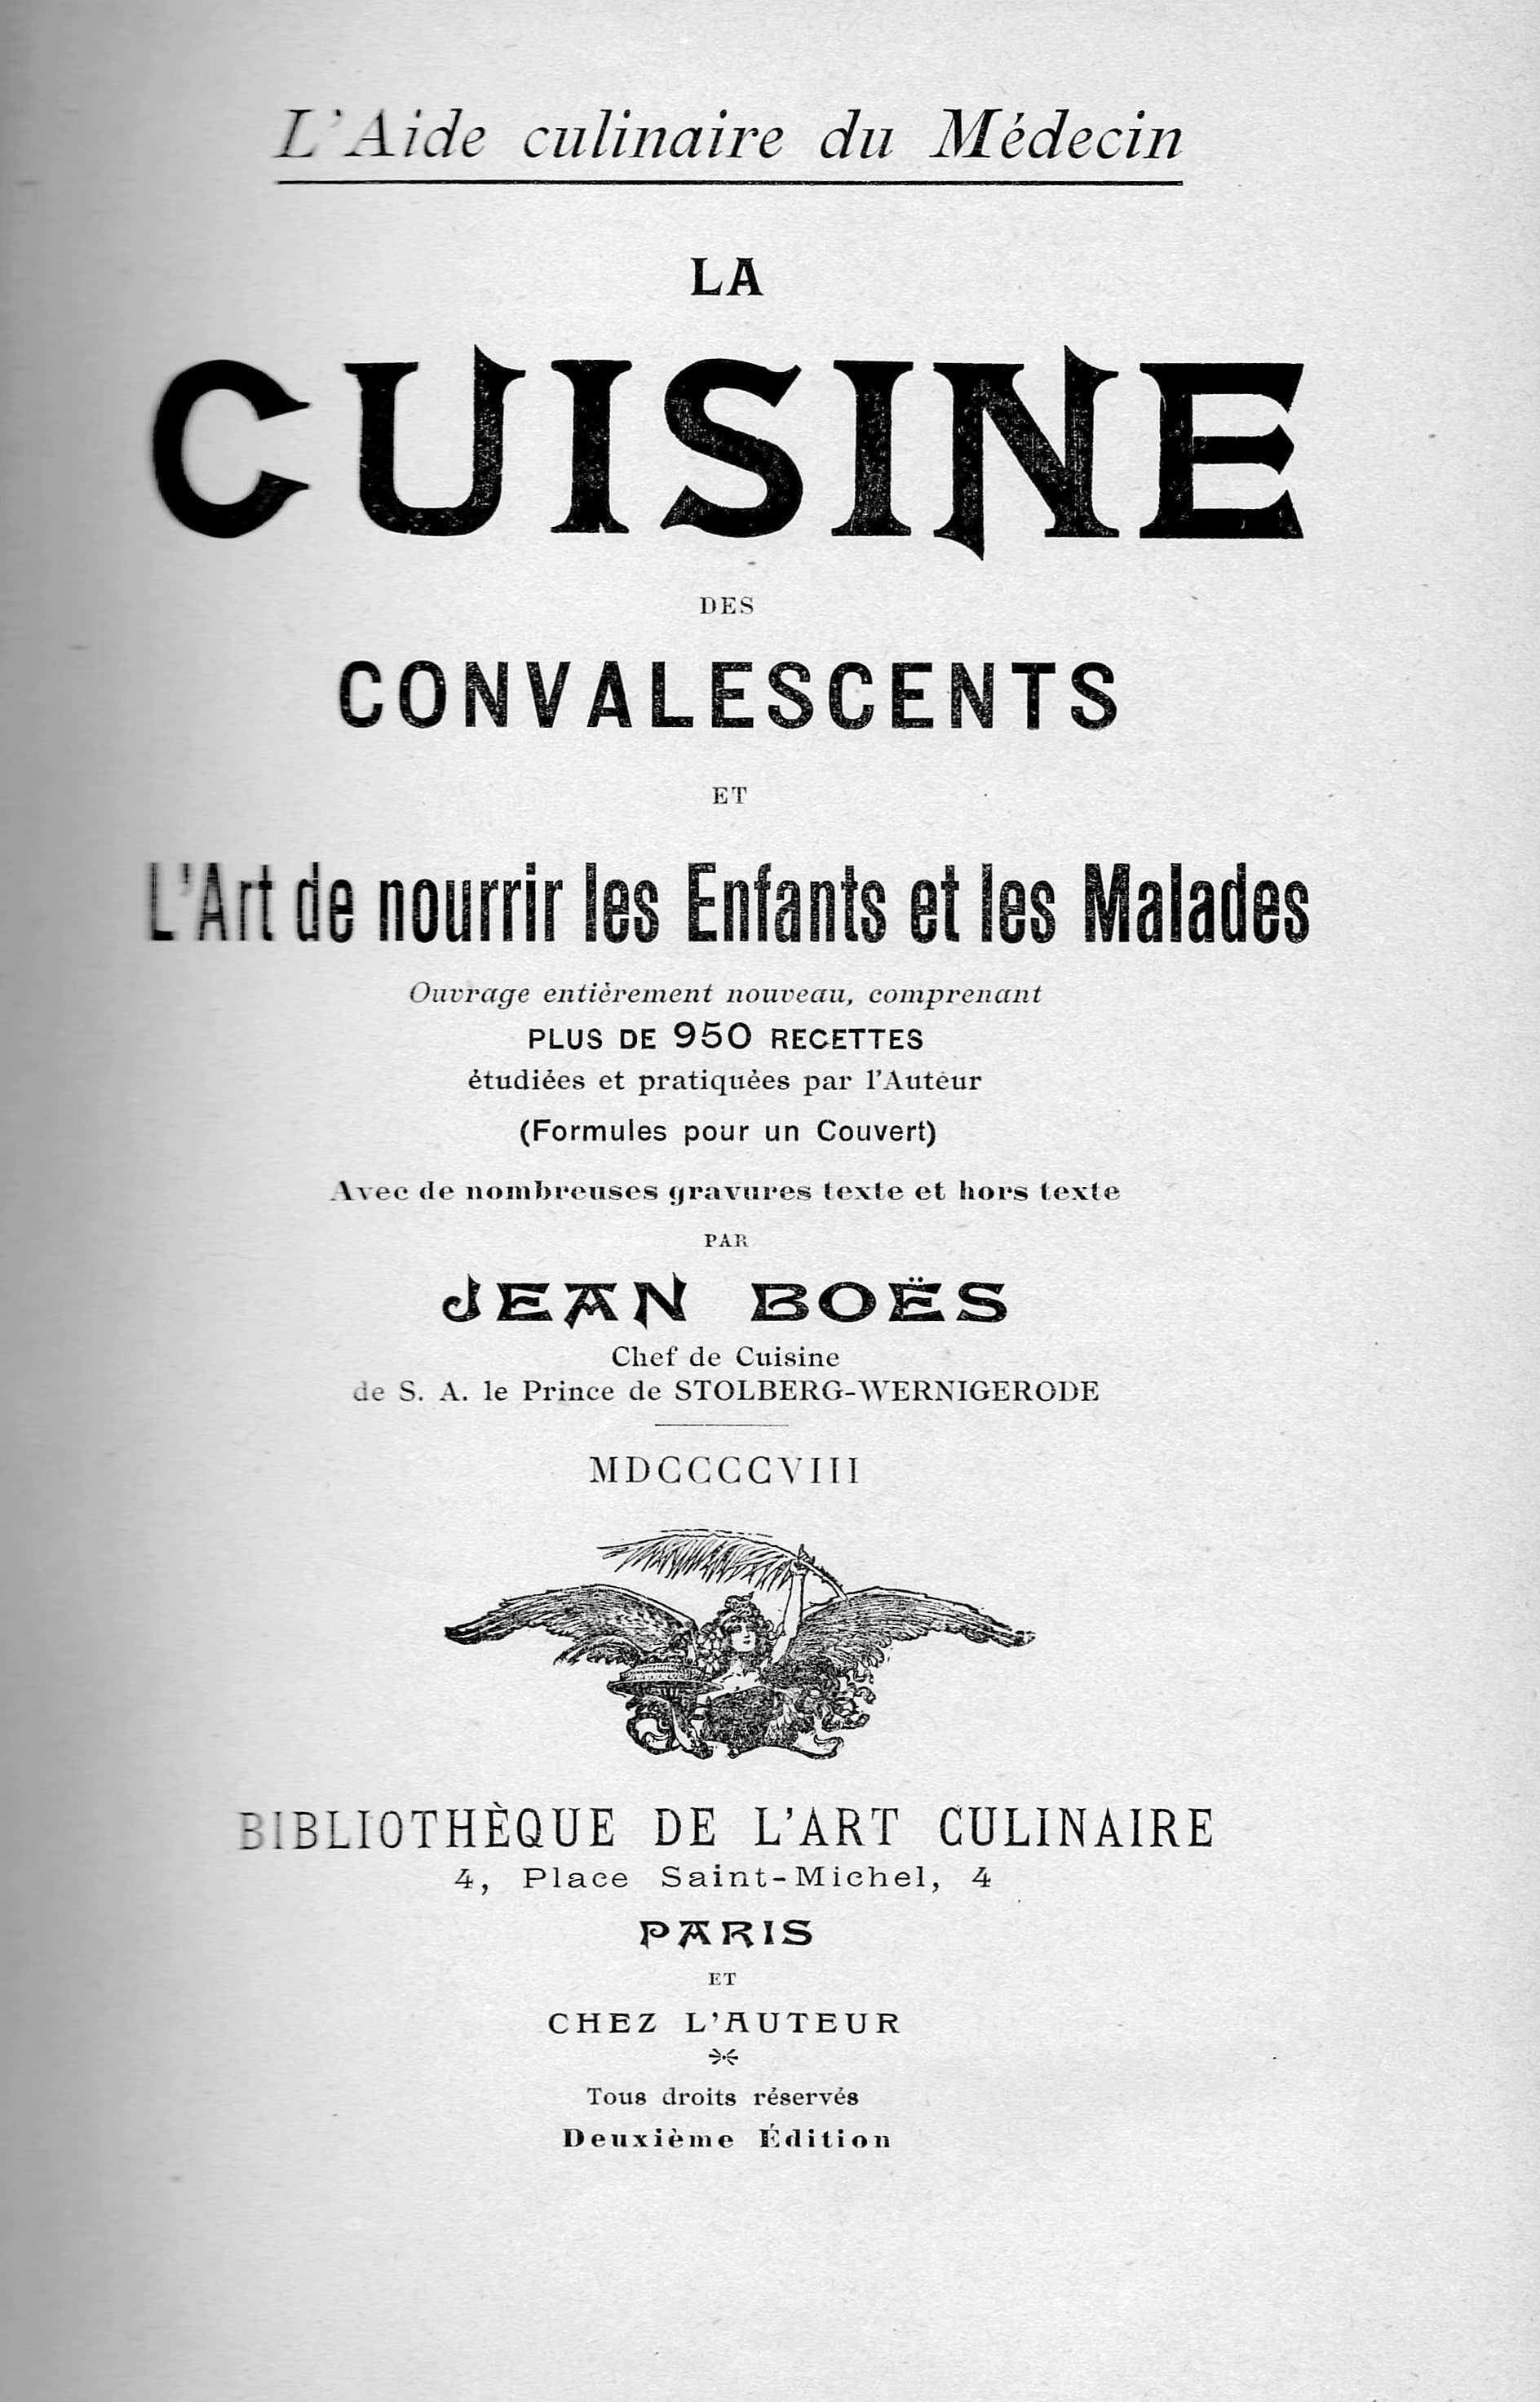 Kochbuch von Jean Boës: La Cuisine des Convalescents, Paris 1908 mit Bick in die Schloßküche des Schlosses Wernigerode (Schloß Wernigerode GmbH RR-F)